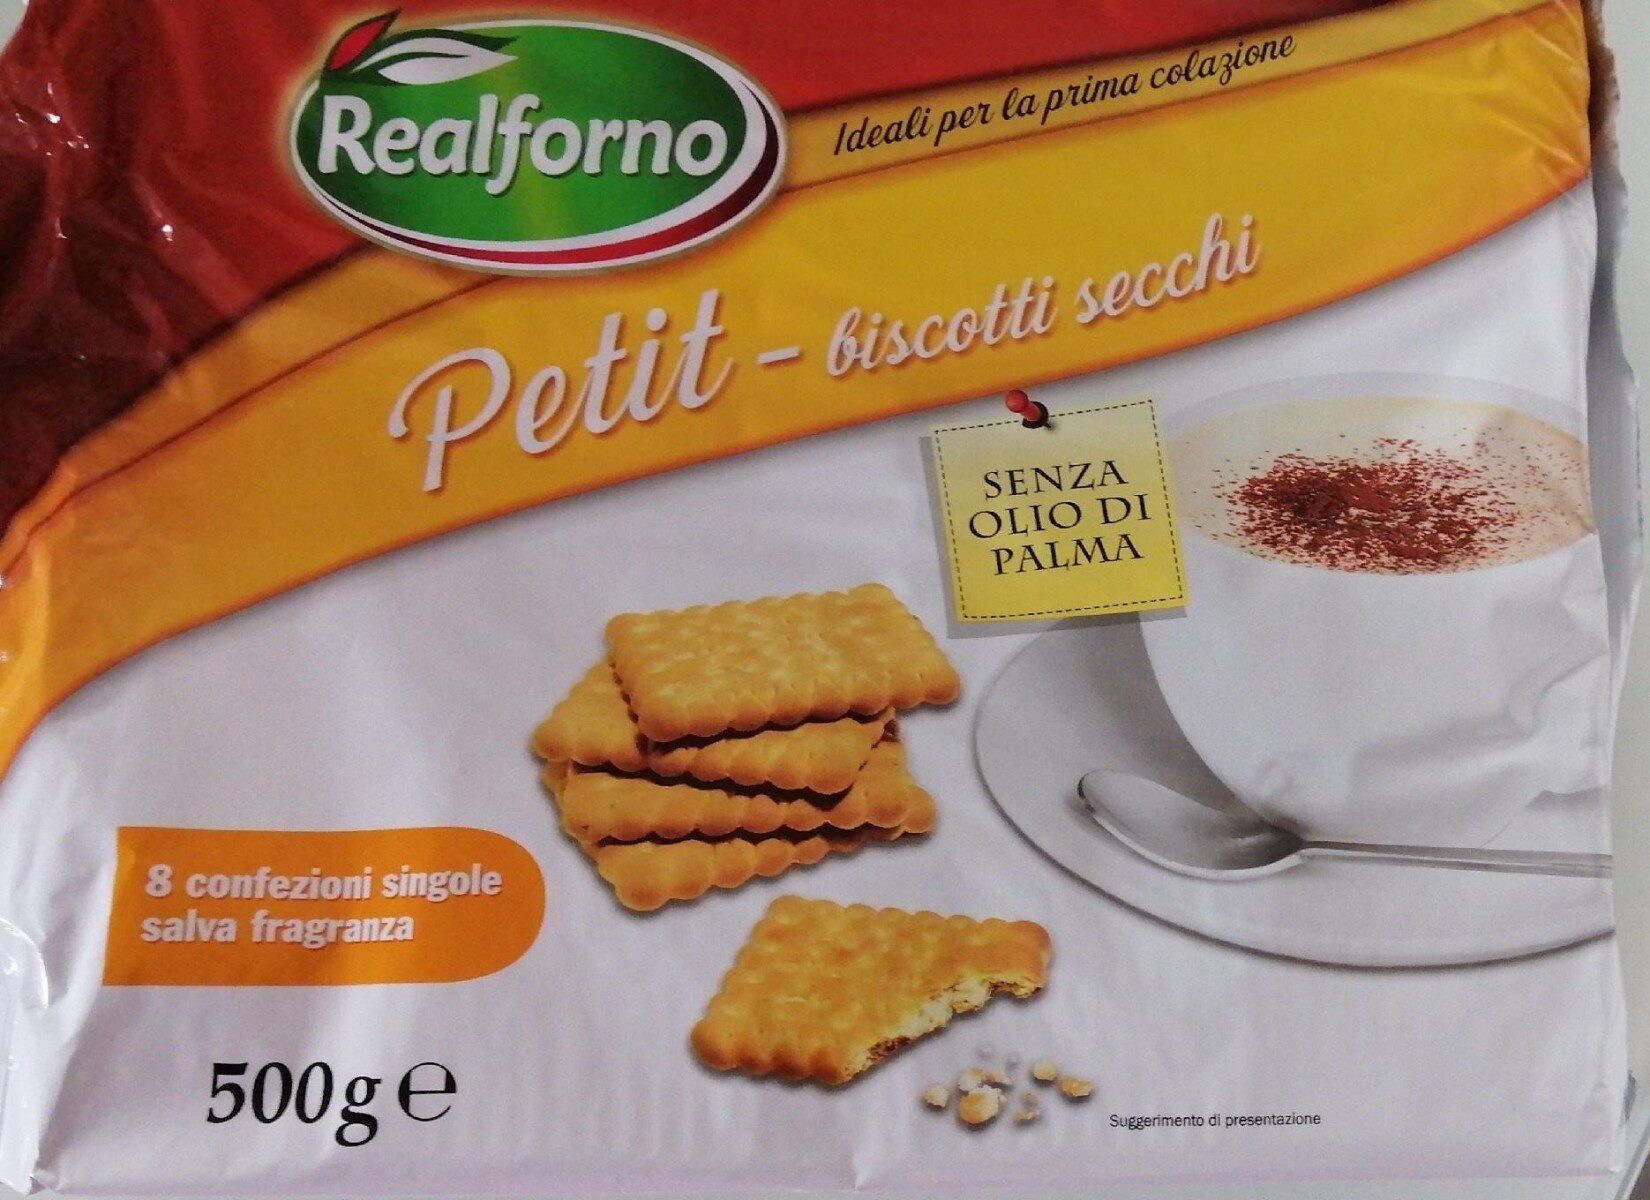 petit- biscotti secchi - Producto - it